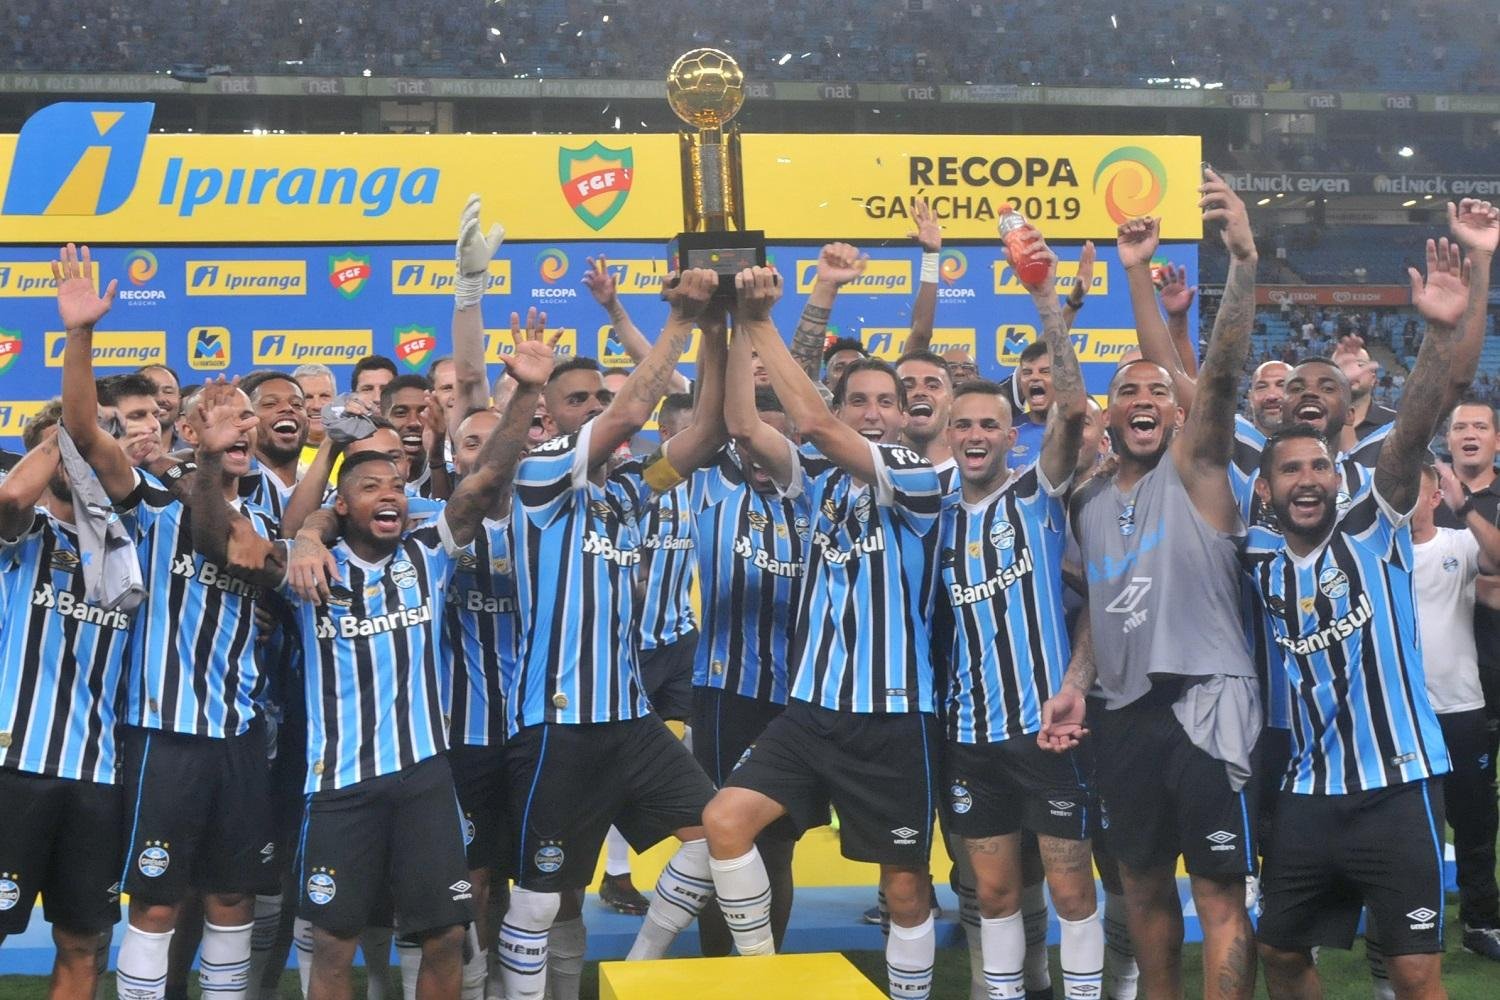 Flamengo vs. Velez: A Clash of Titans in South America